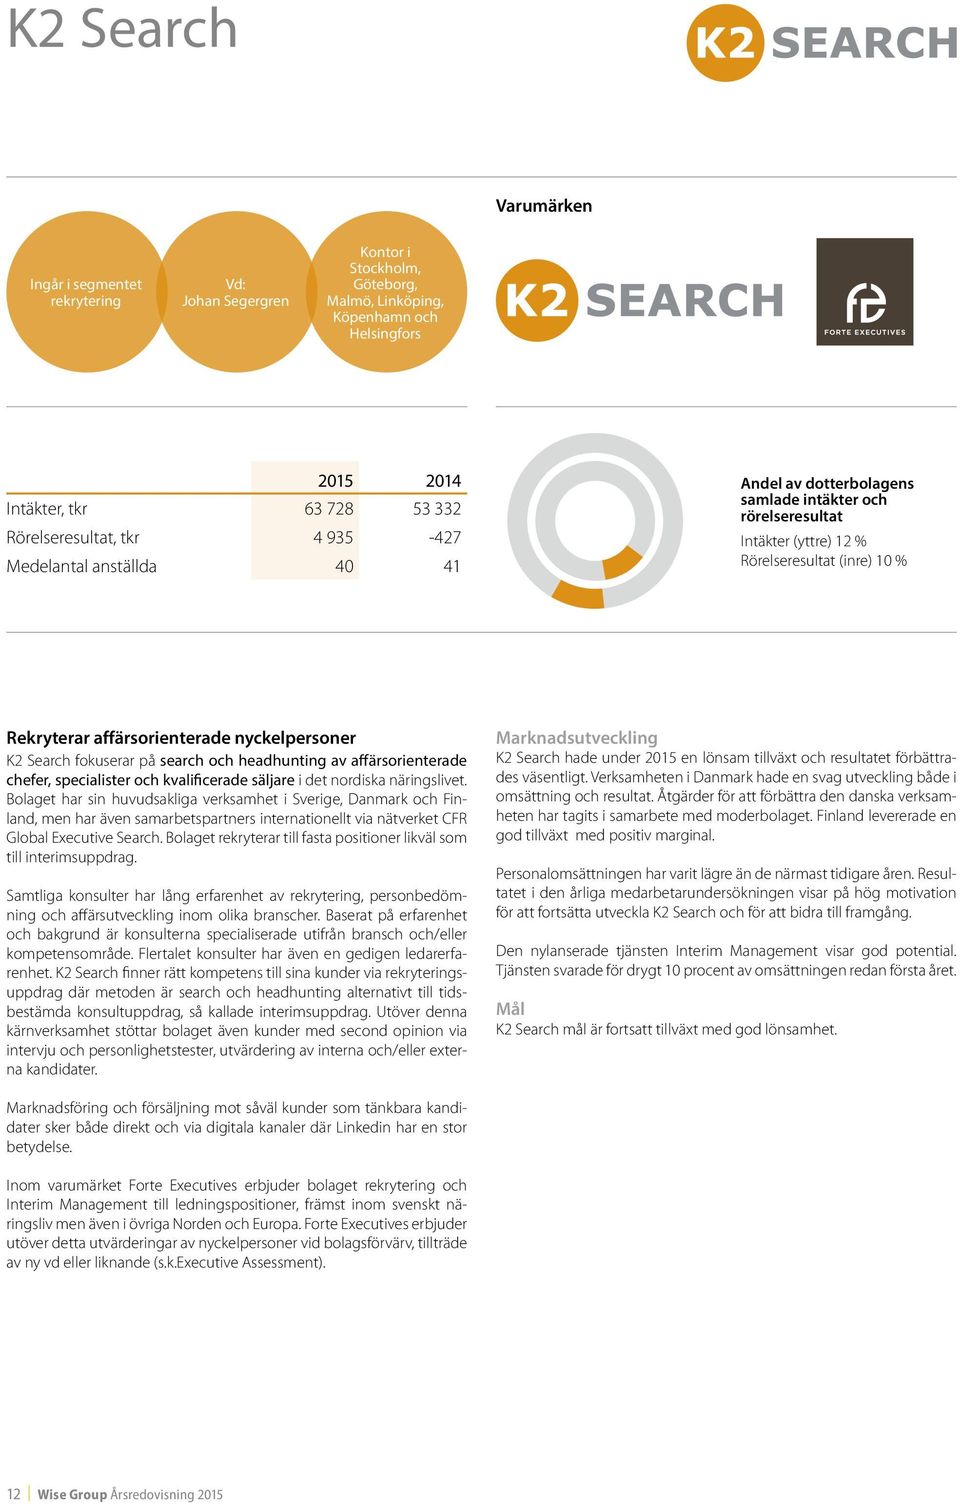 Search fokuserar på search och headhunting av affärsorienterade chefer, specialister och kvalificerade säljare i det nordiska näringslivet.